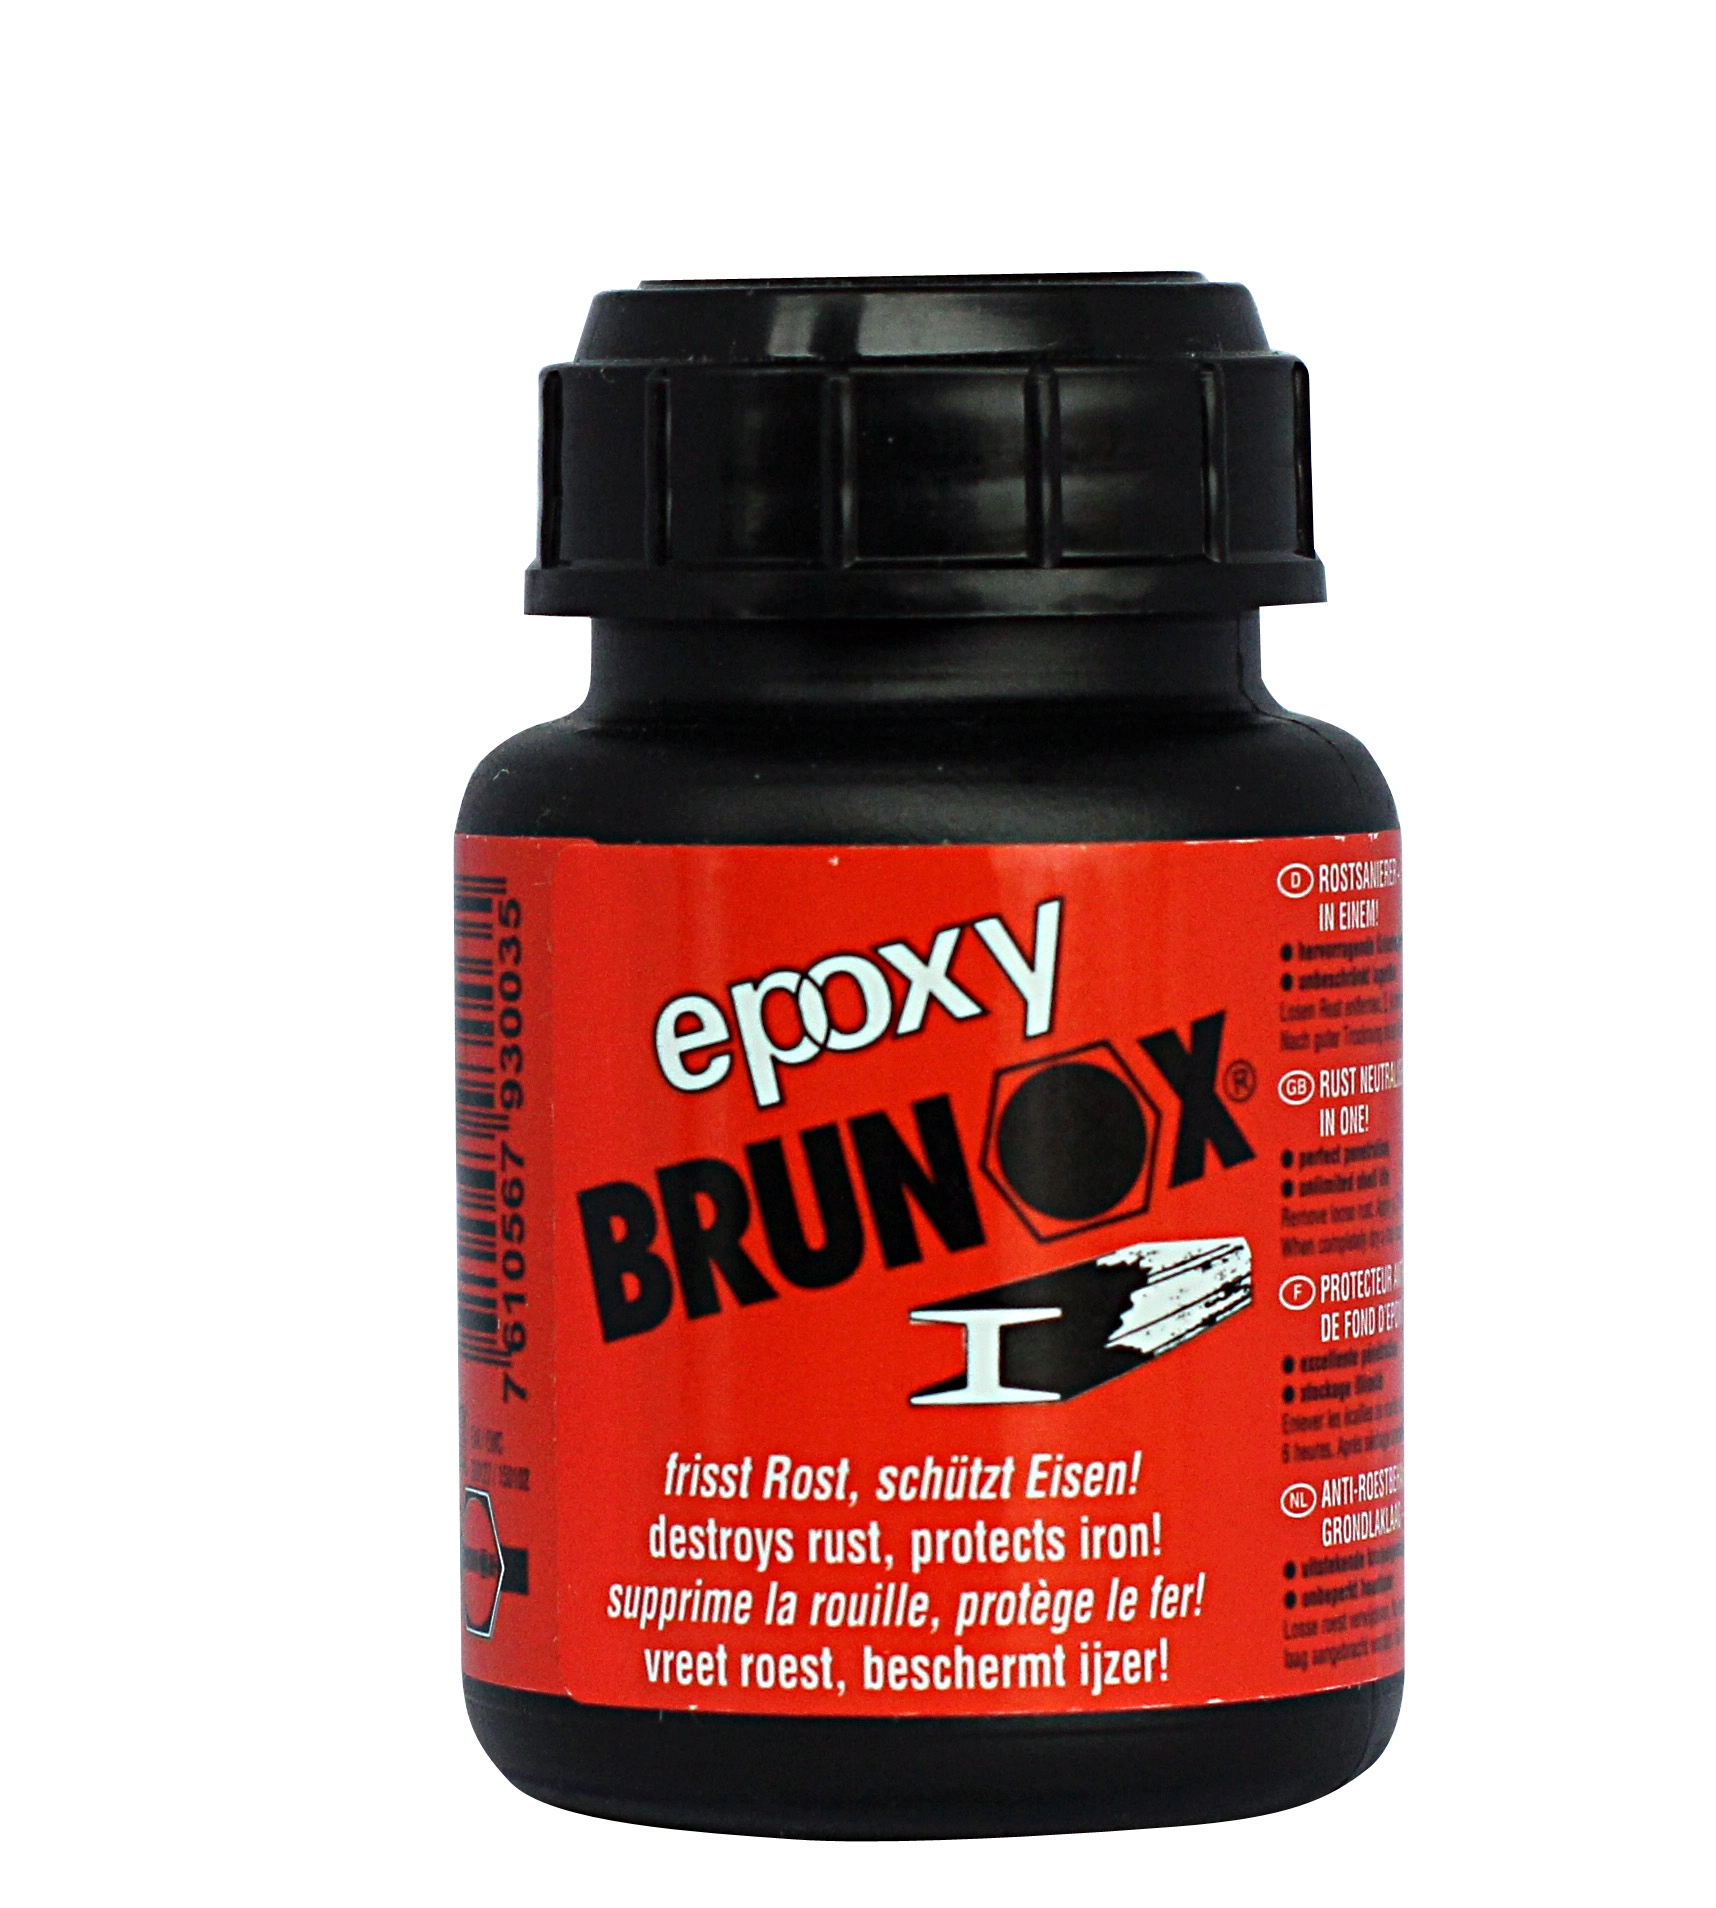 Brunox Epoxy rostumwandler 100 ml kaufen bei OBI